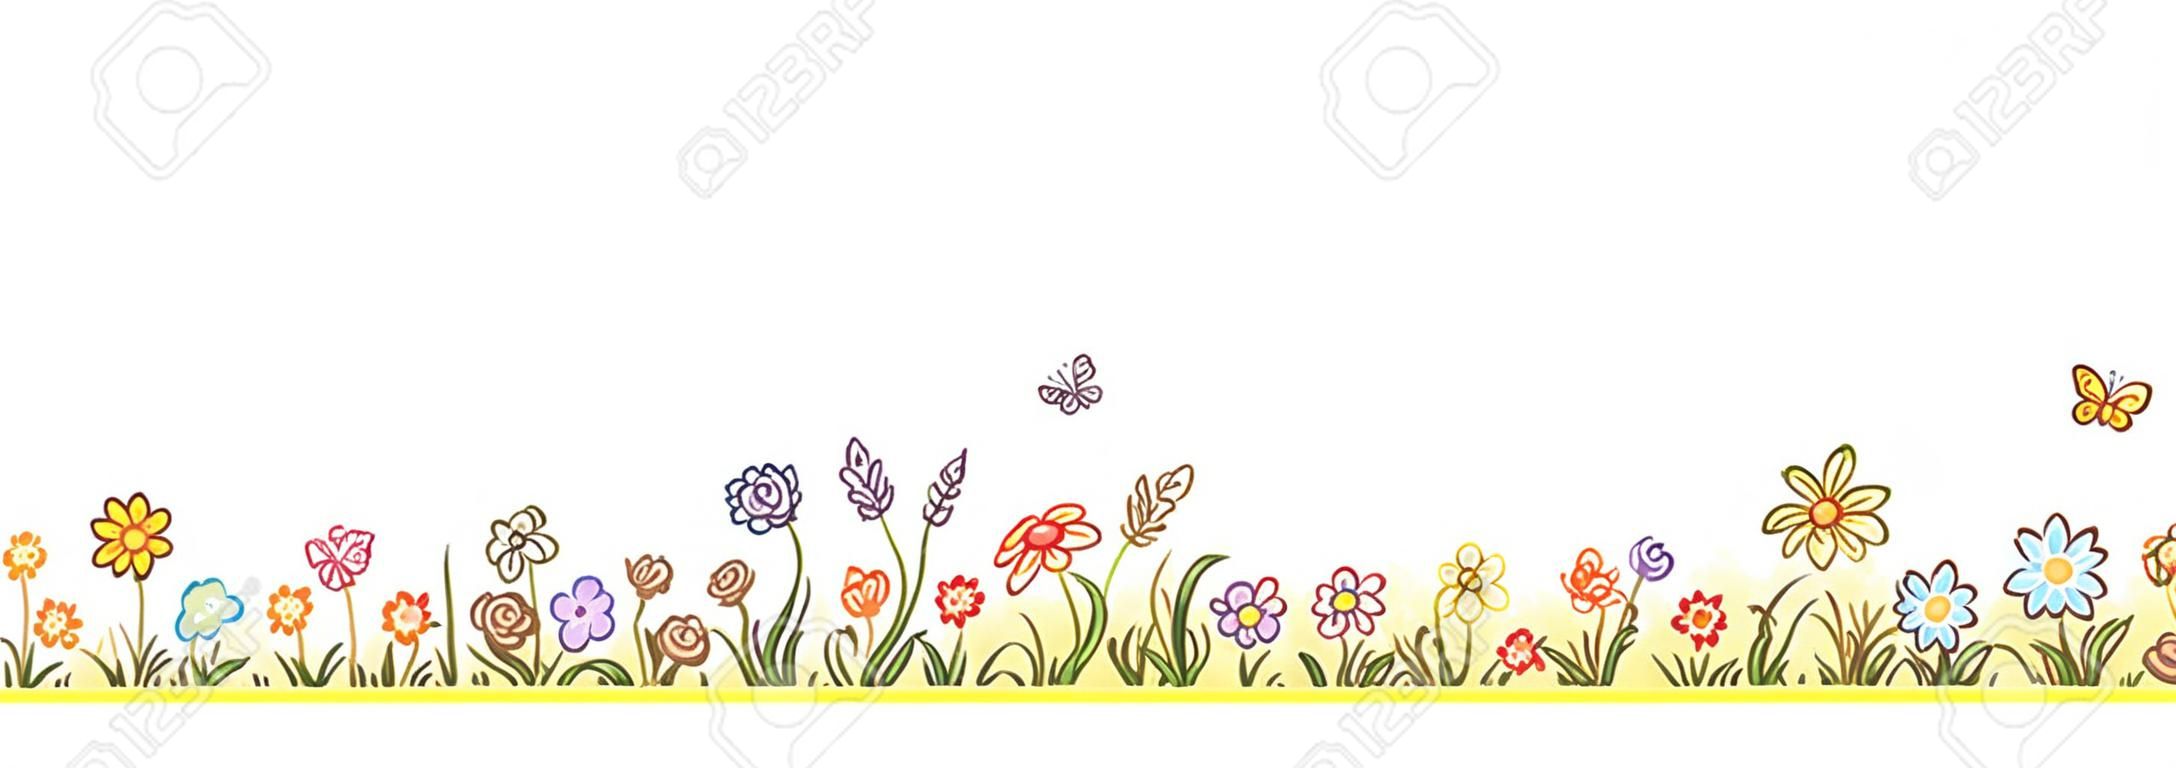 Красочный цветок границы с большим количеством мультфильма цветы, травы и бабочек, не градиенты